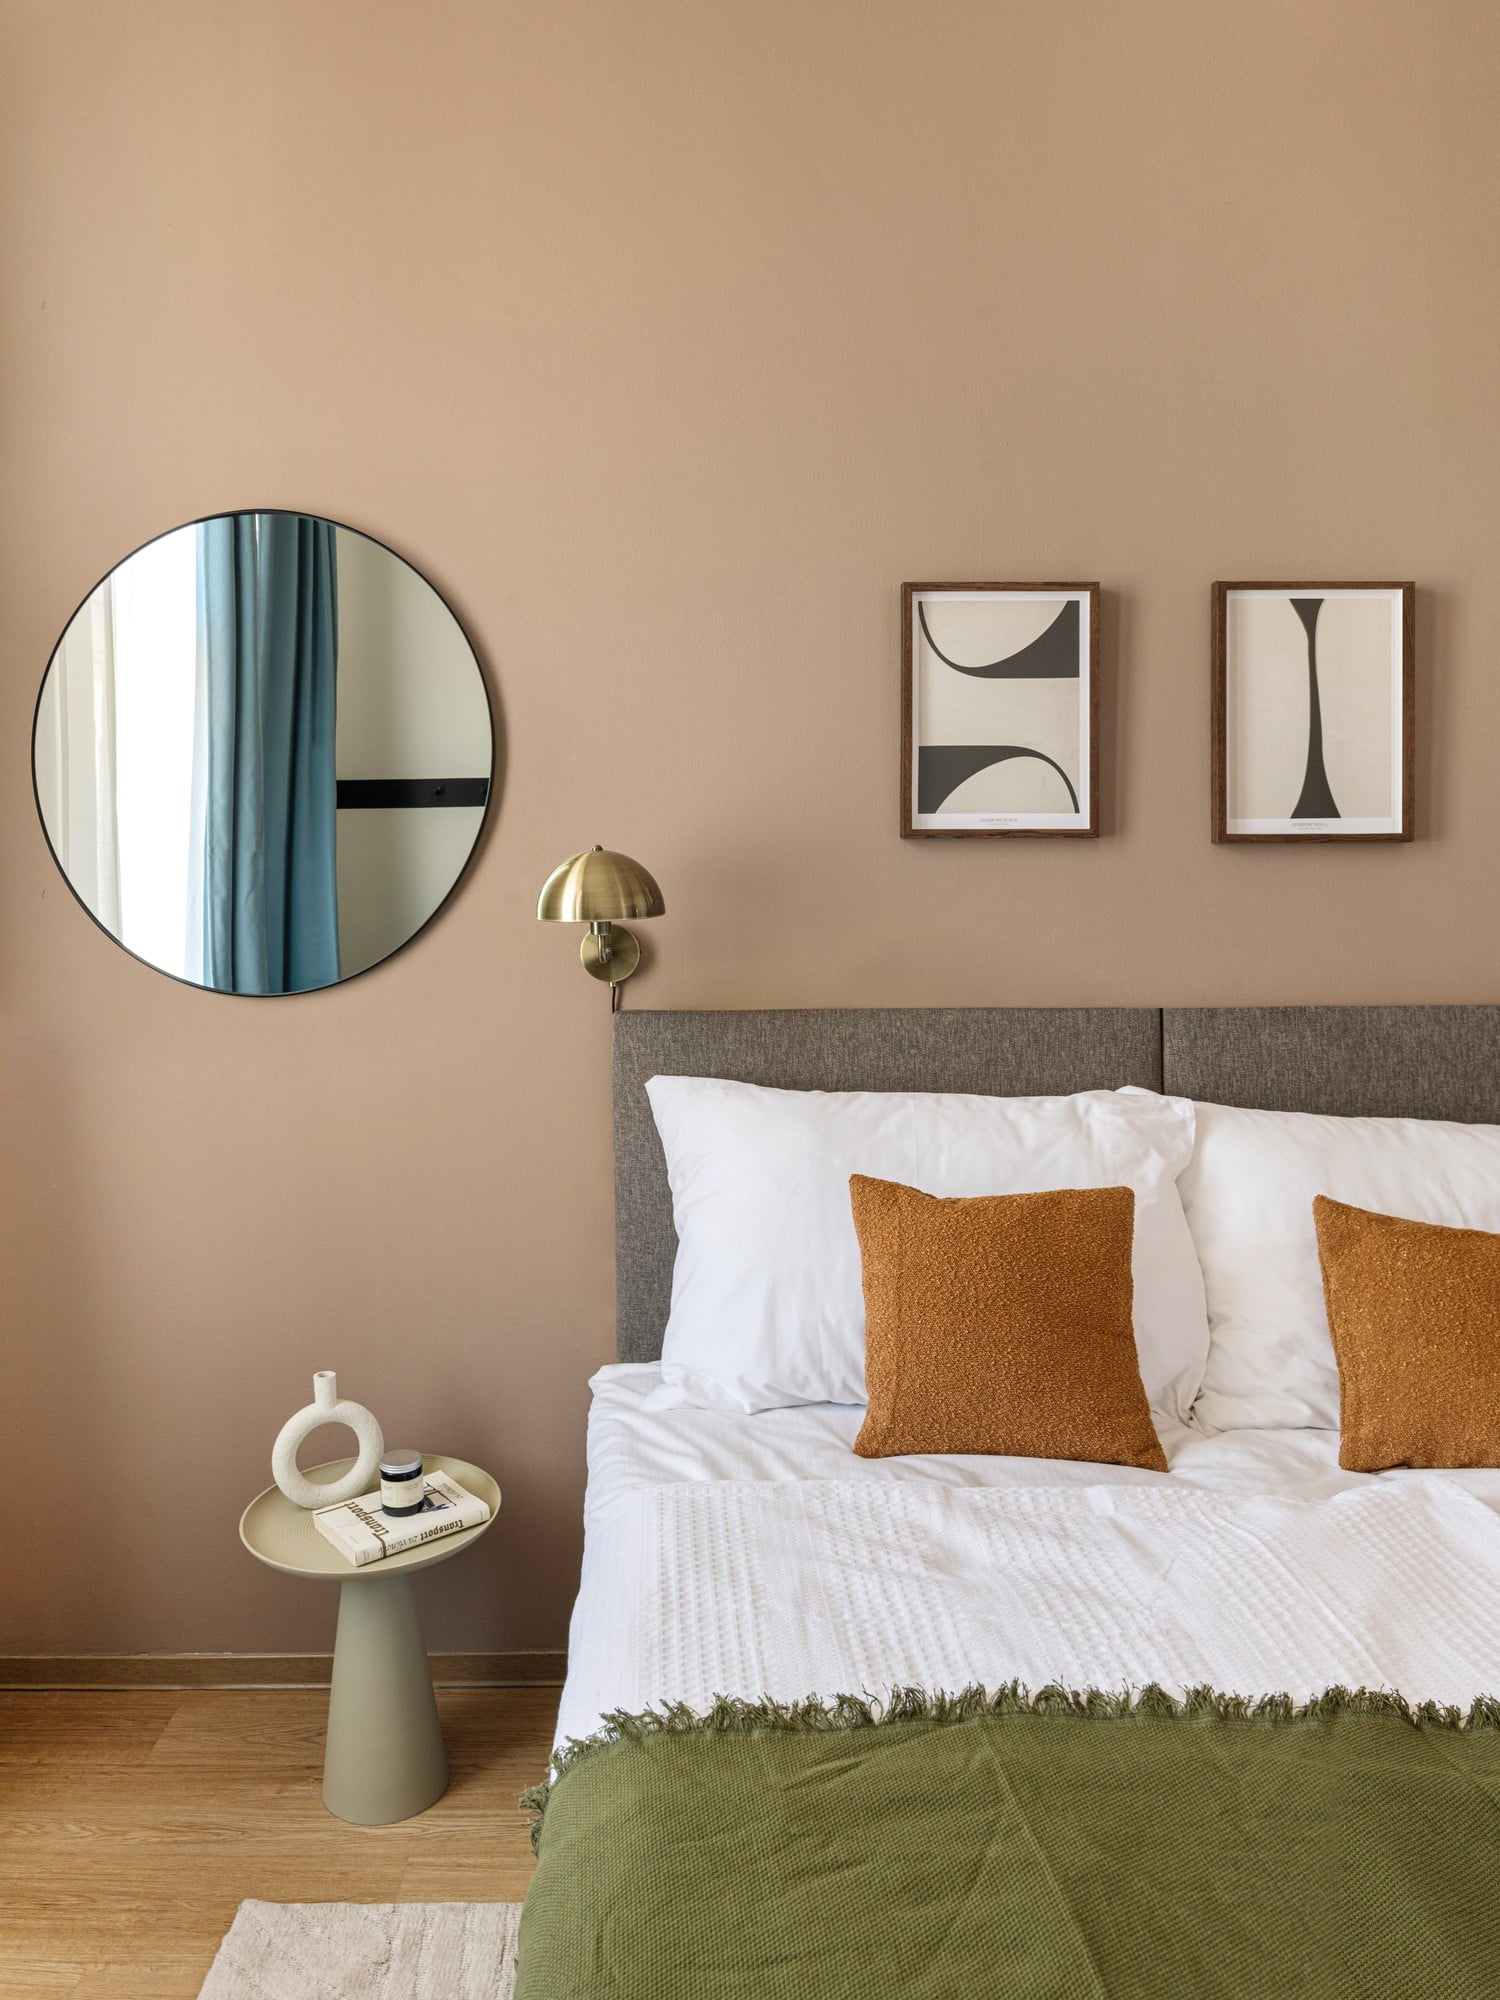 V moderní ložnici je důležitý vizuální klid, kterého docílíte volbou nábytku s jednoduchými liniemi a bez zbytečných ozdob.